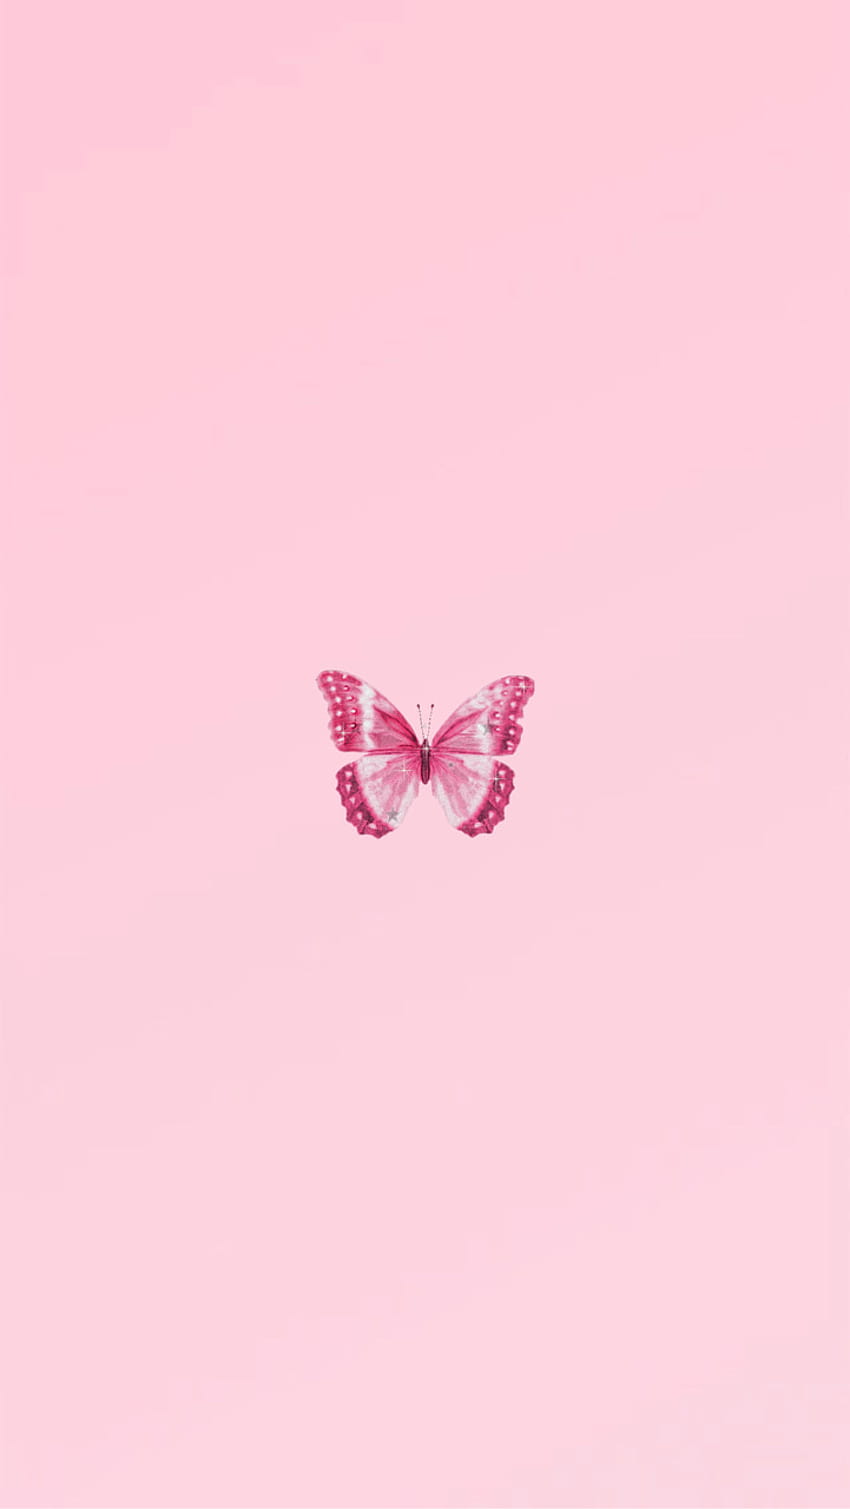 Cuộc sống rất đẹp khi bạn có thể trầm mình vào thế giới của bướm. Bắt đầu với hình ảnh một con bướm tuyệt đẹp, sắc màu đầy sức sống và năng lượng, đắm mình trong màu sắc tinh tế và kỹ thuật hoàn hảo của chúng. Xem ảnh và cảm nhận sự thăng hoa của bướm!